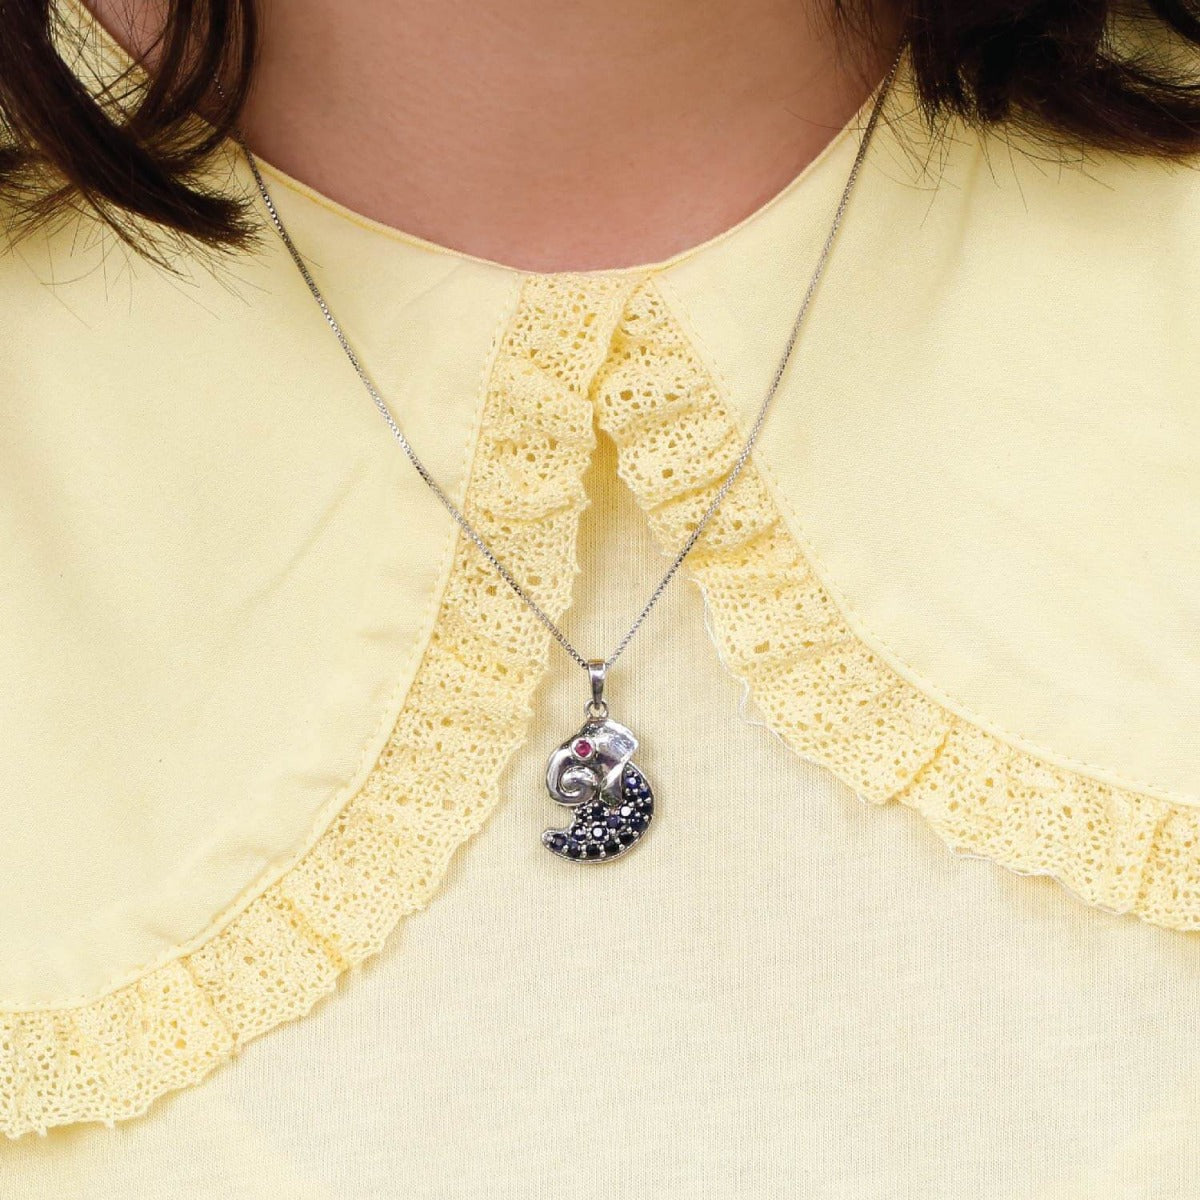 elephant pendant, silver pendant, silver pendant, sterling silver pendant, color stone jewelry, colorstone pendant